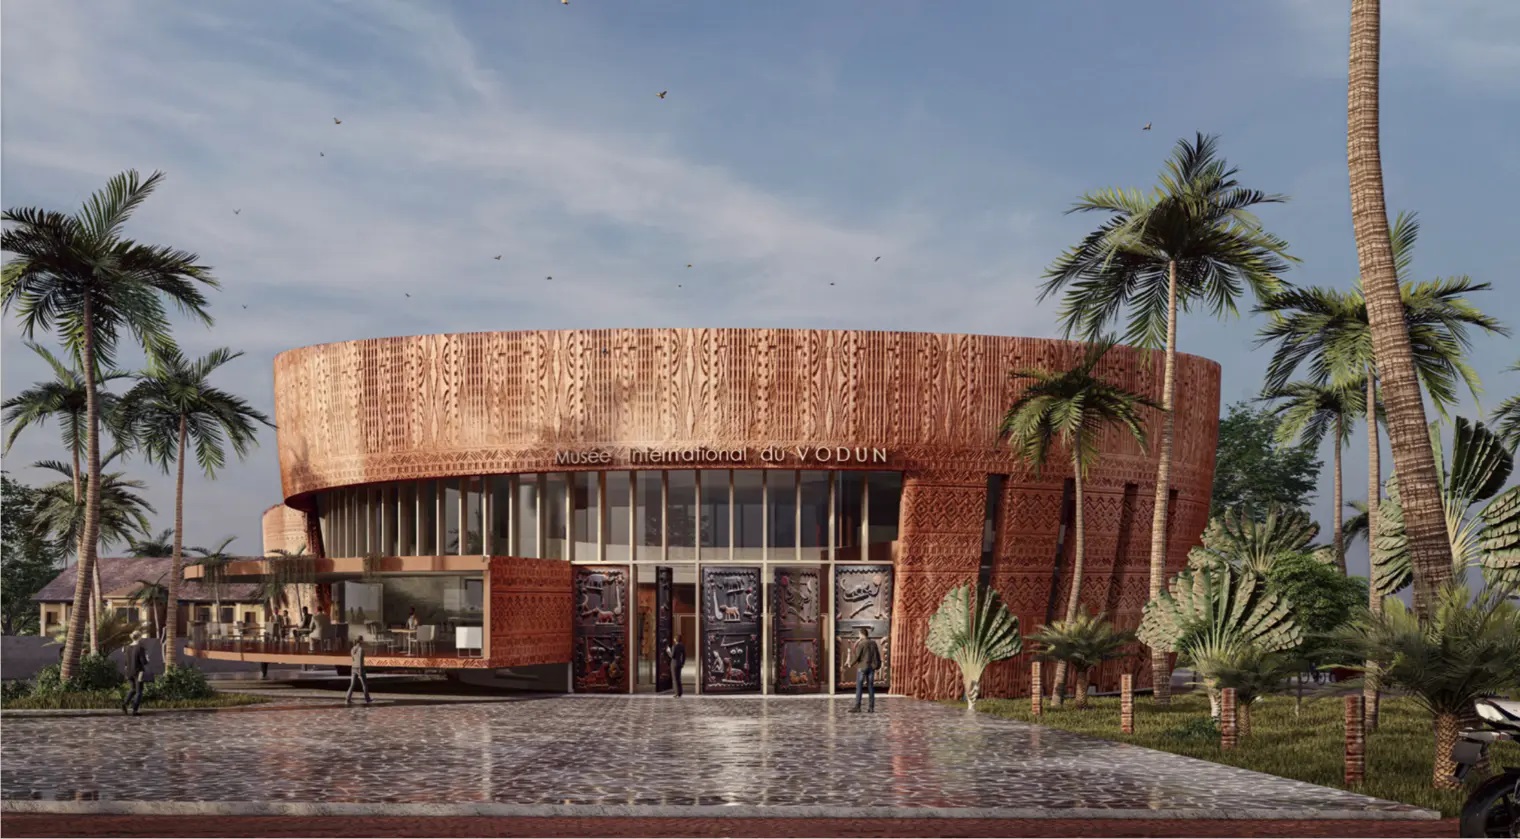 Avez-vous entendu parler du Musée International du Vodun à Porto-Novo au Bénin ?